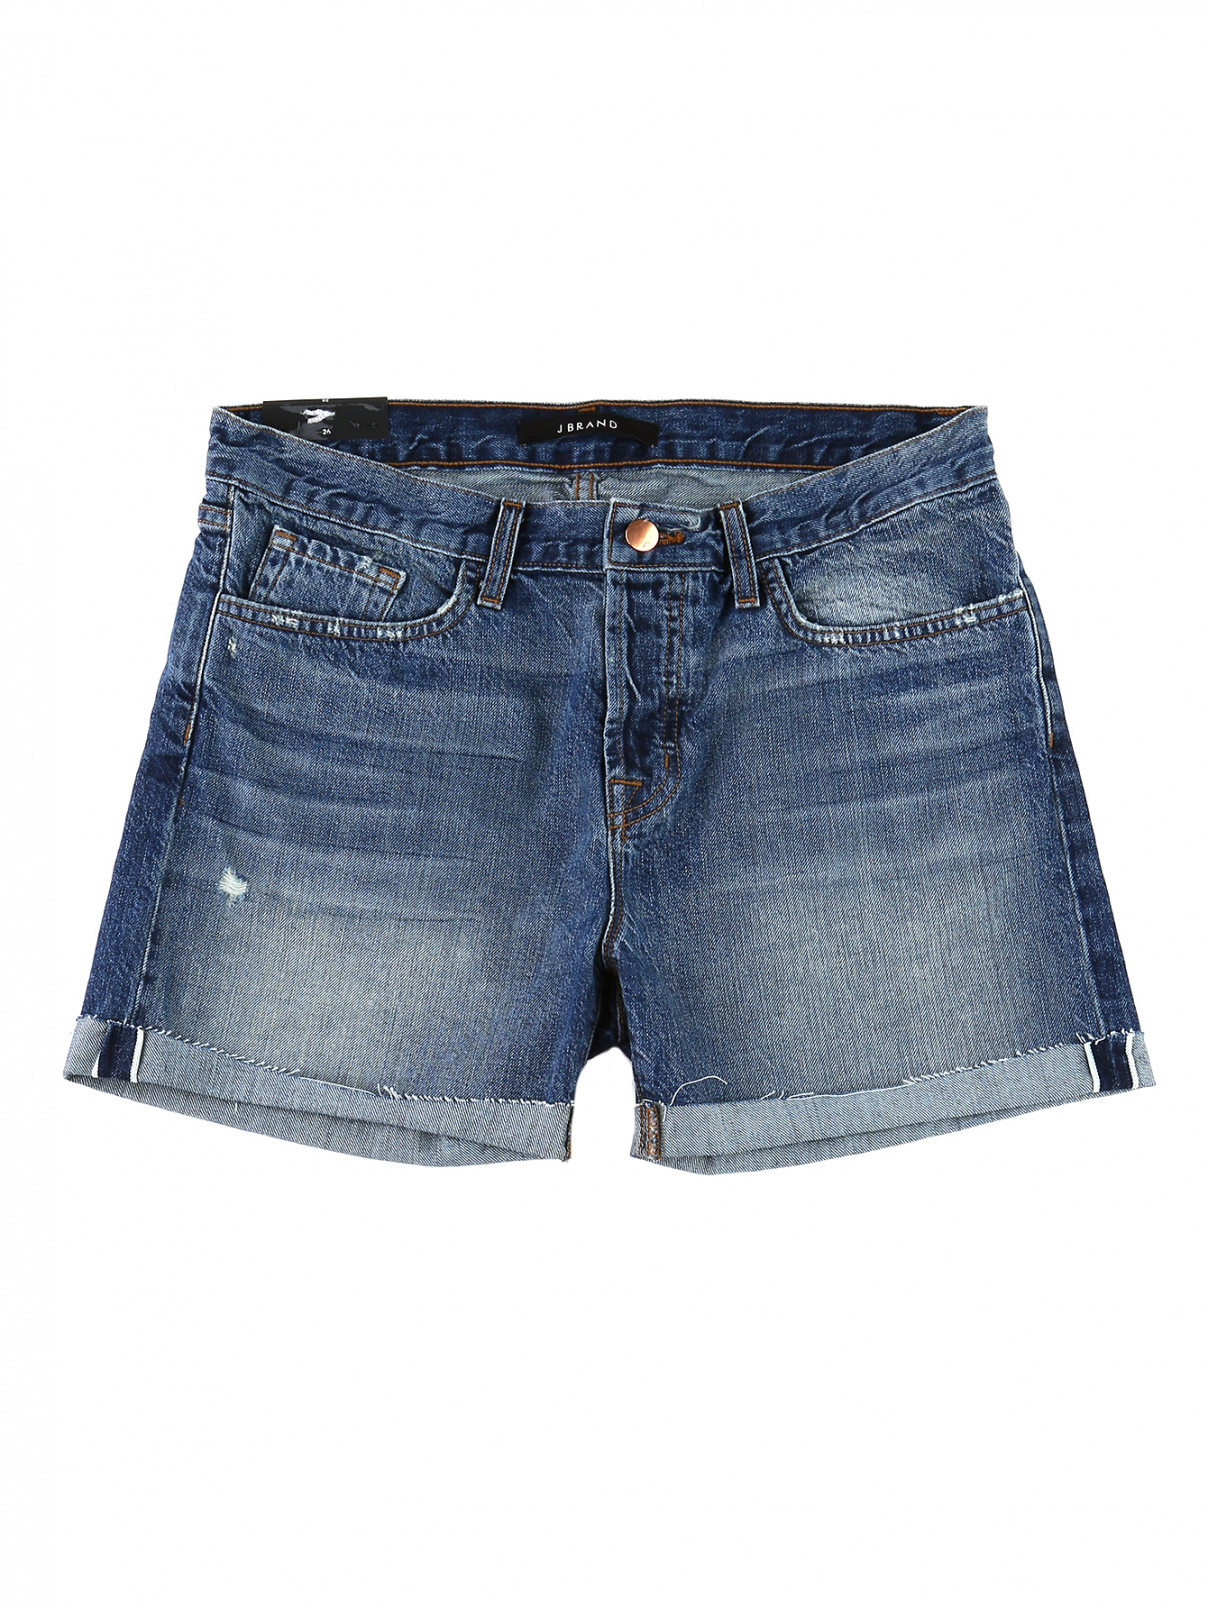 Джинсовые шорты с подвернутыми манжетами J Brand  –  Общий вид  – Цвет:  Синий